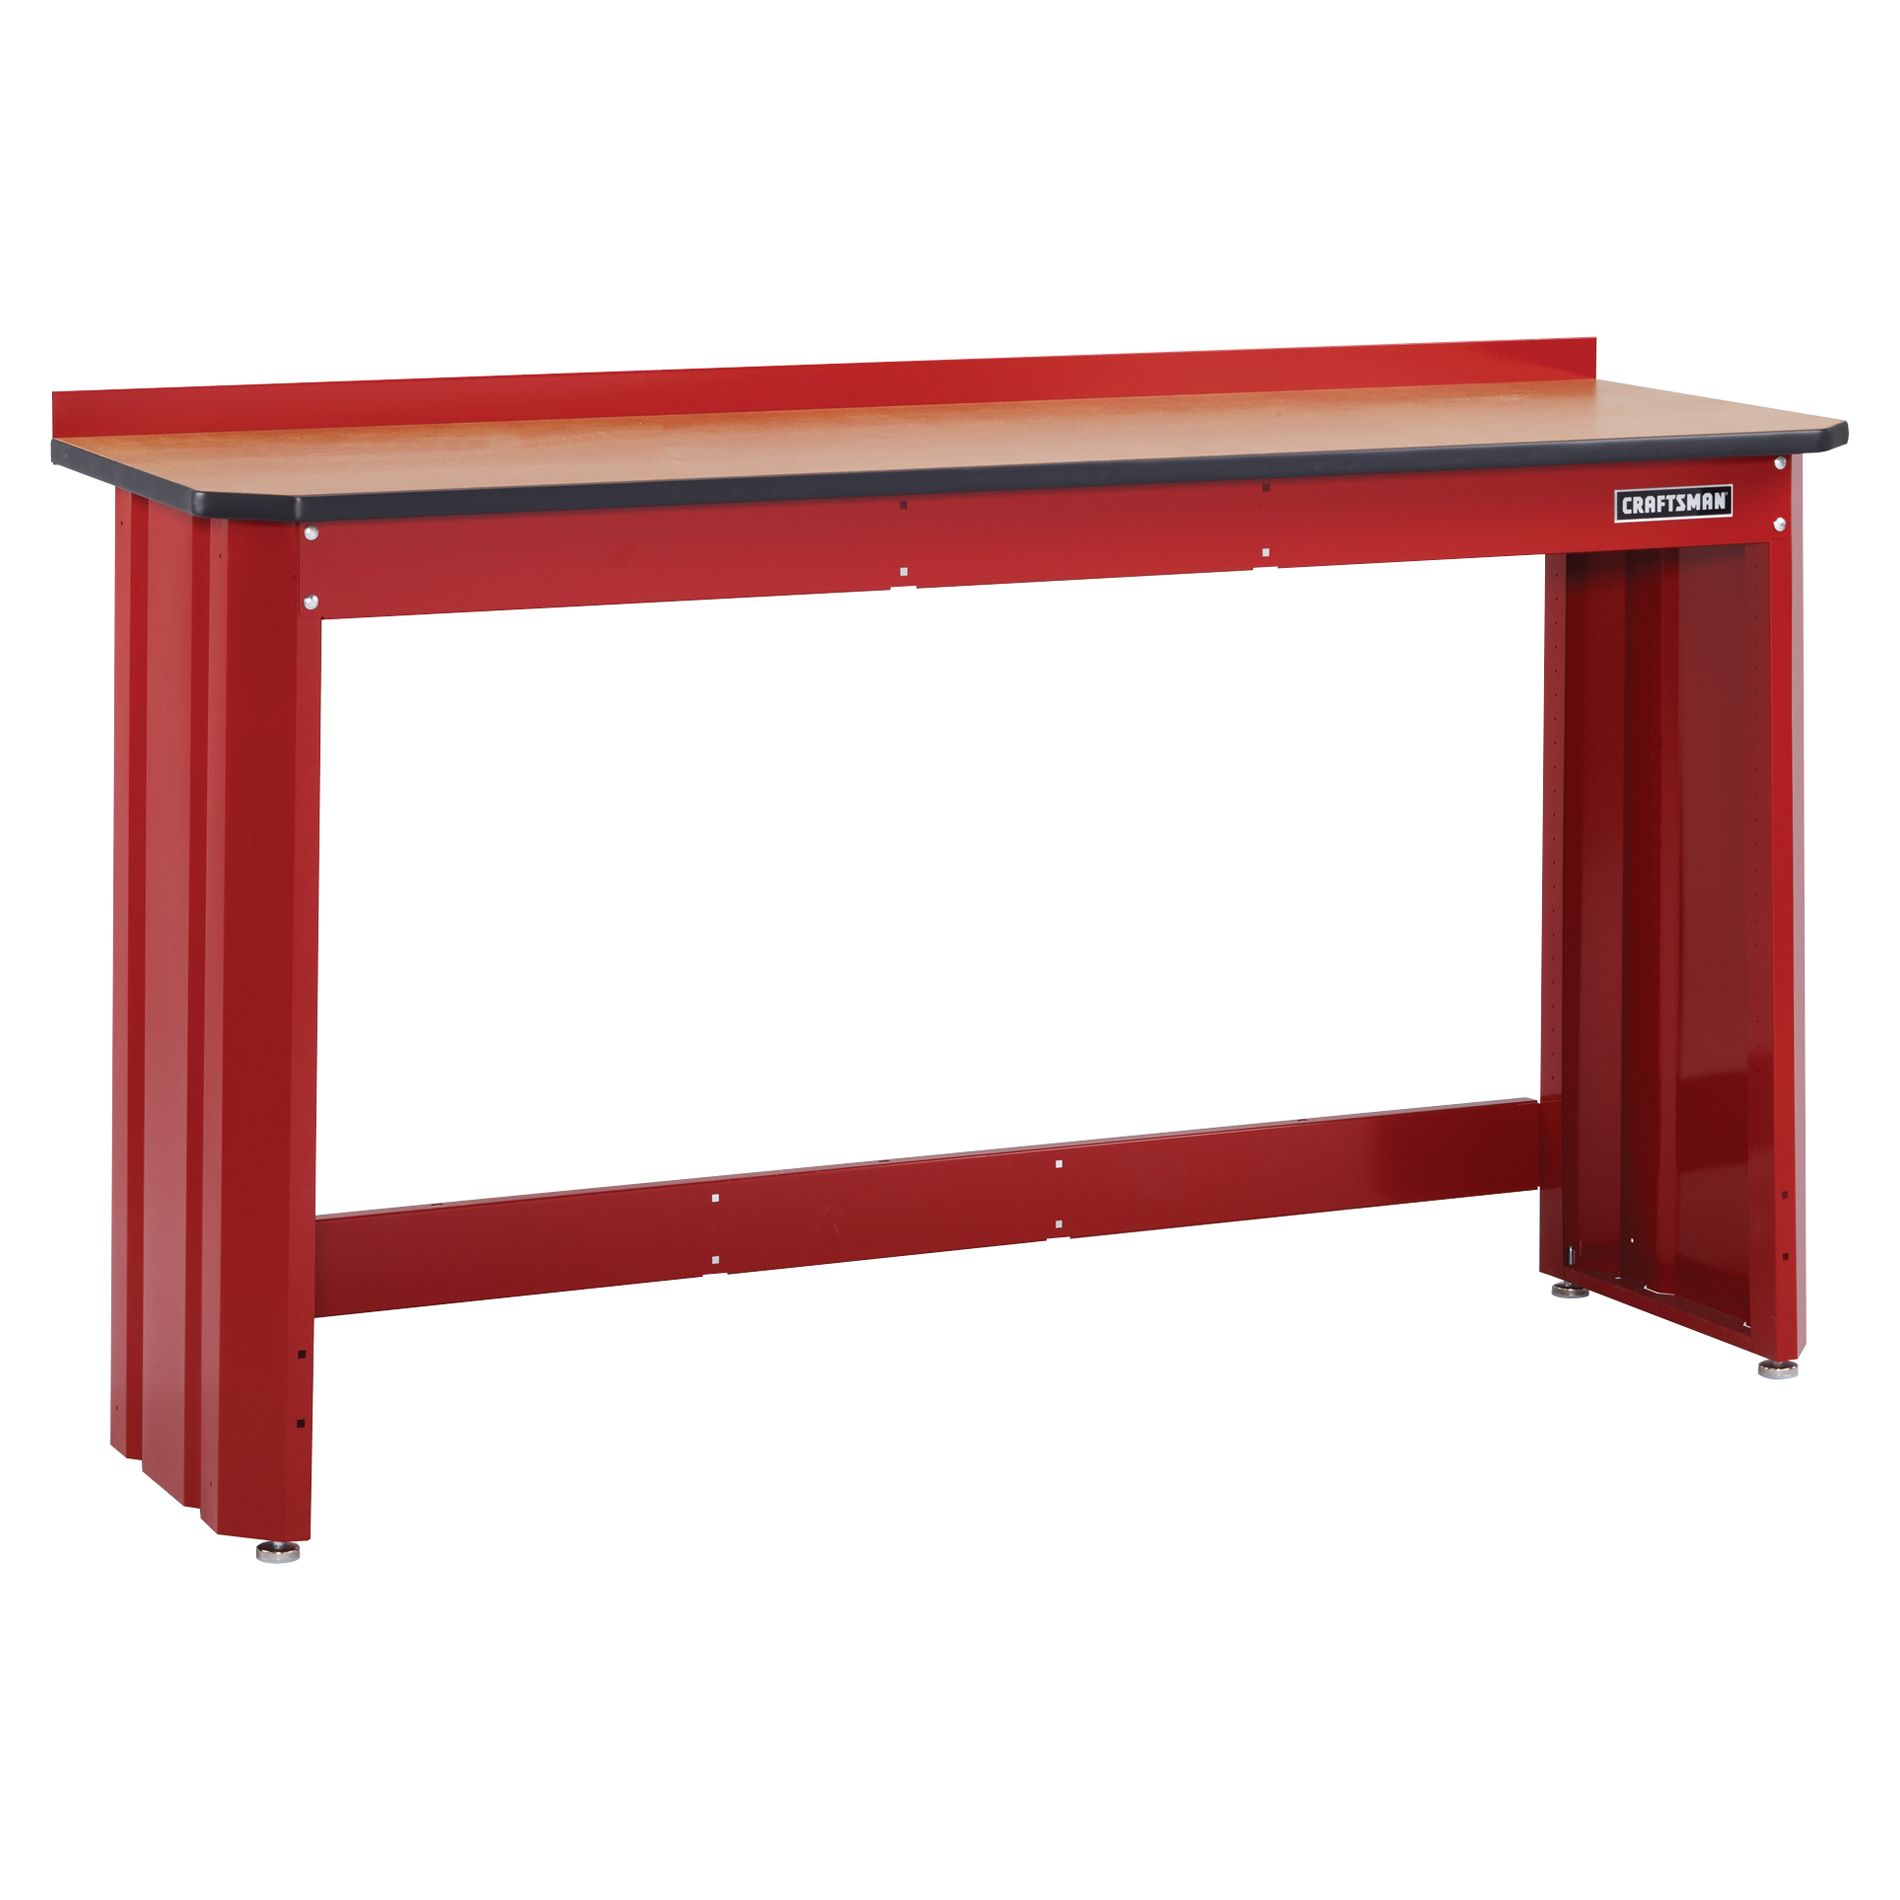 Craftsman 6' Workbench - Red